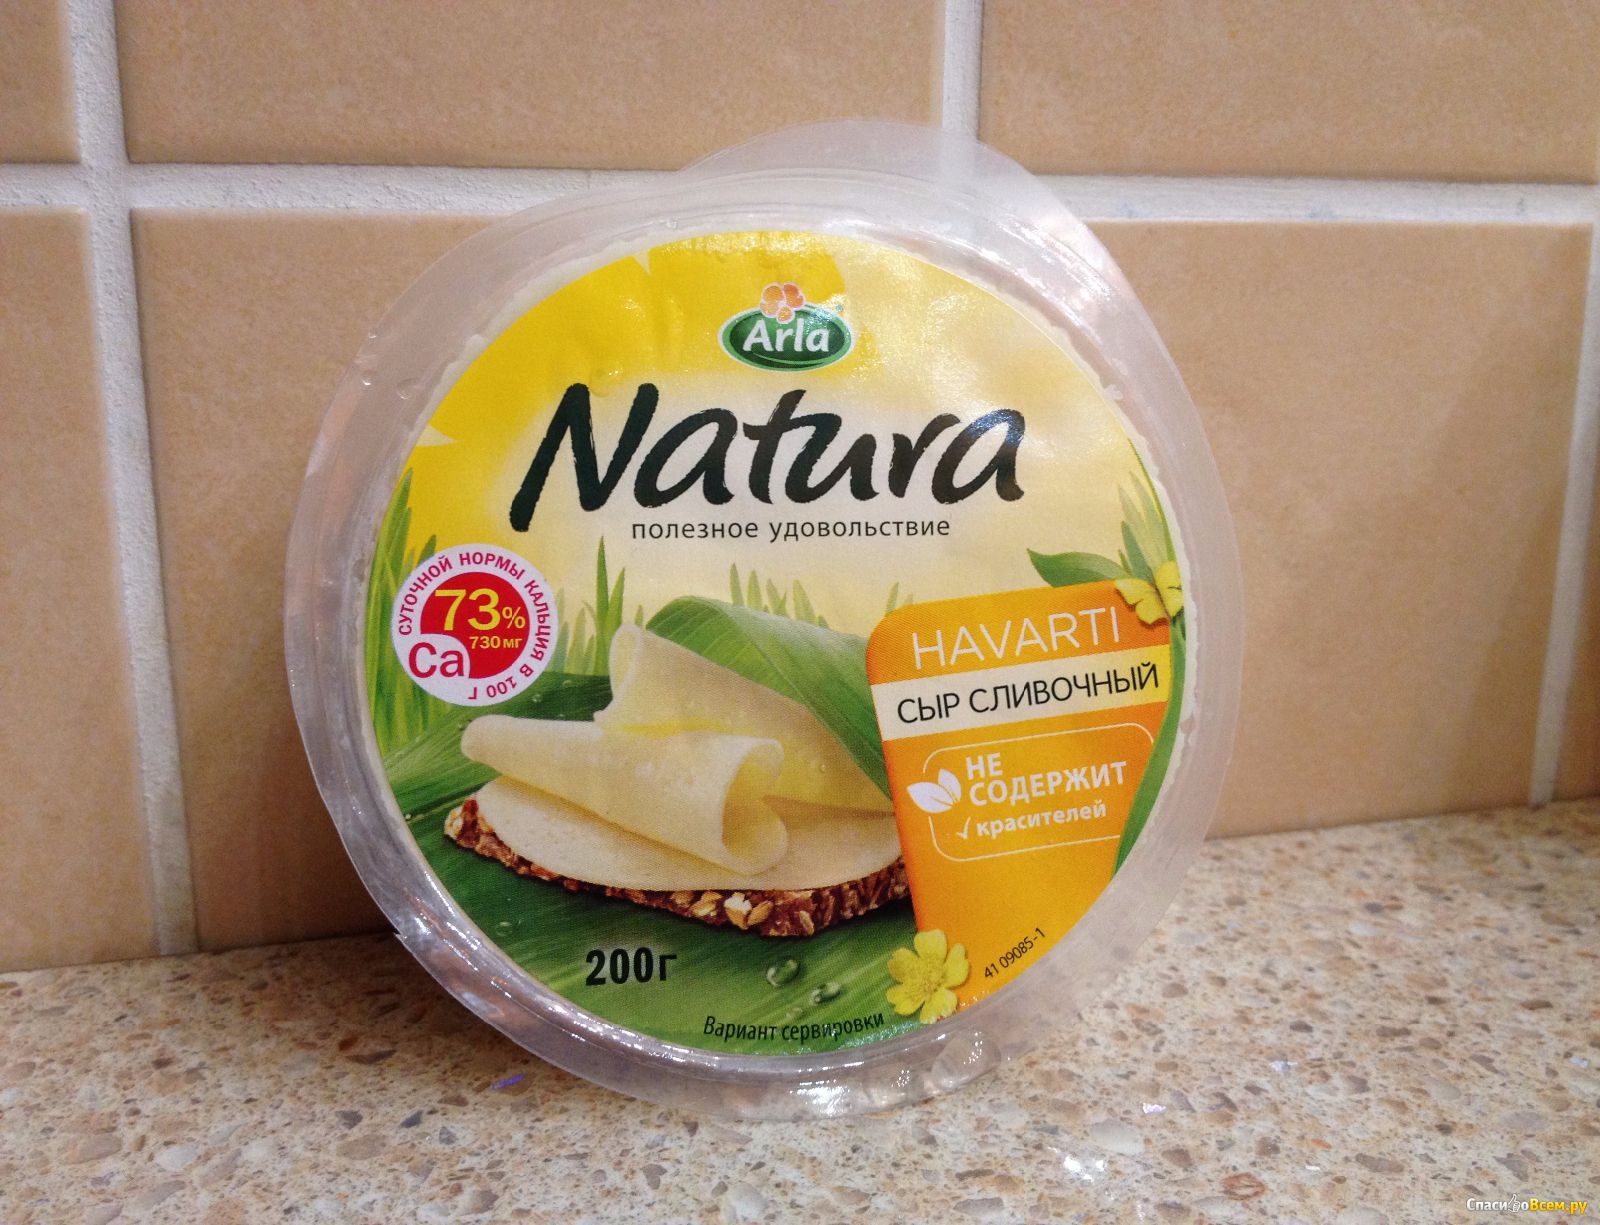 Легкий сливочный сыр